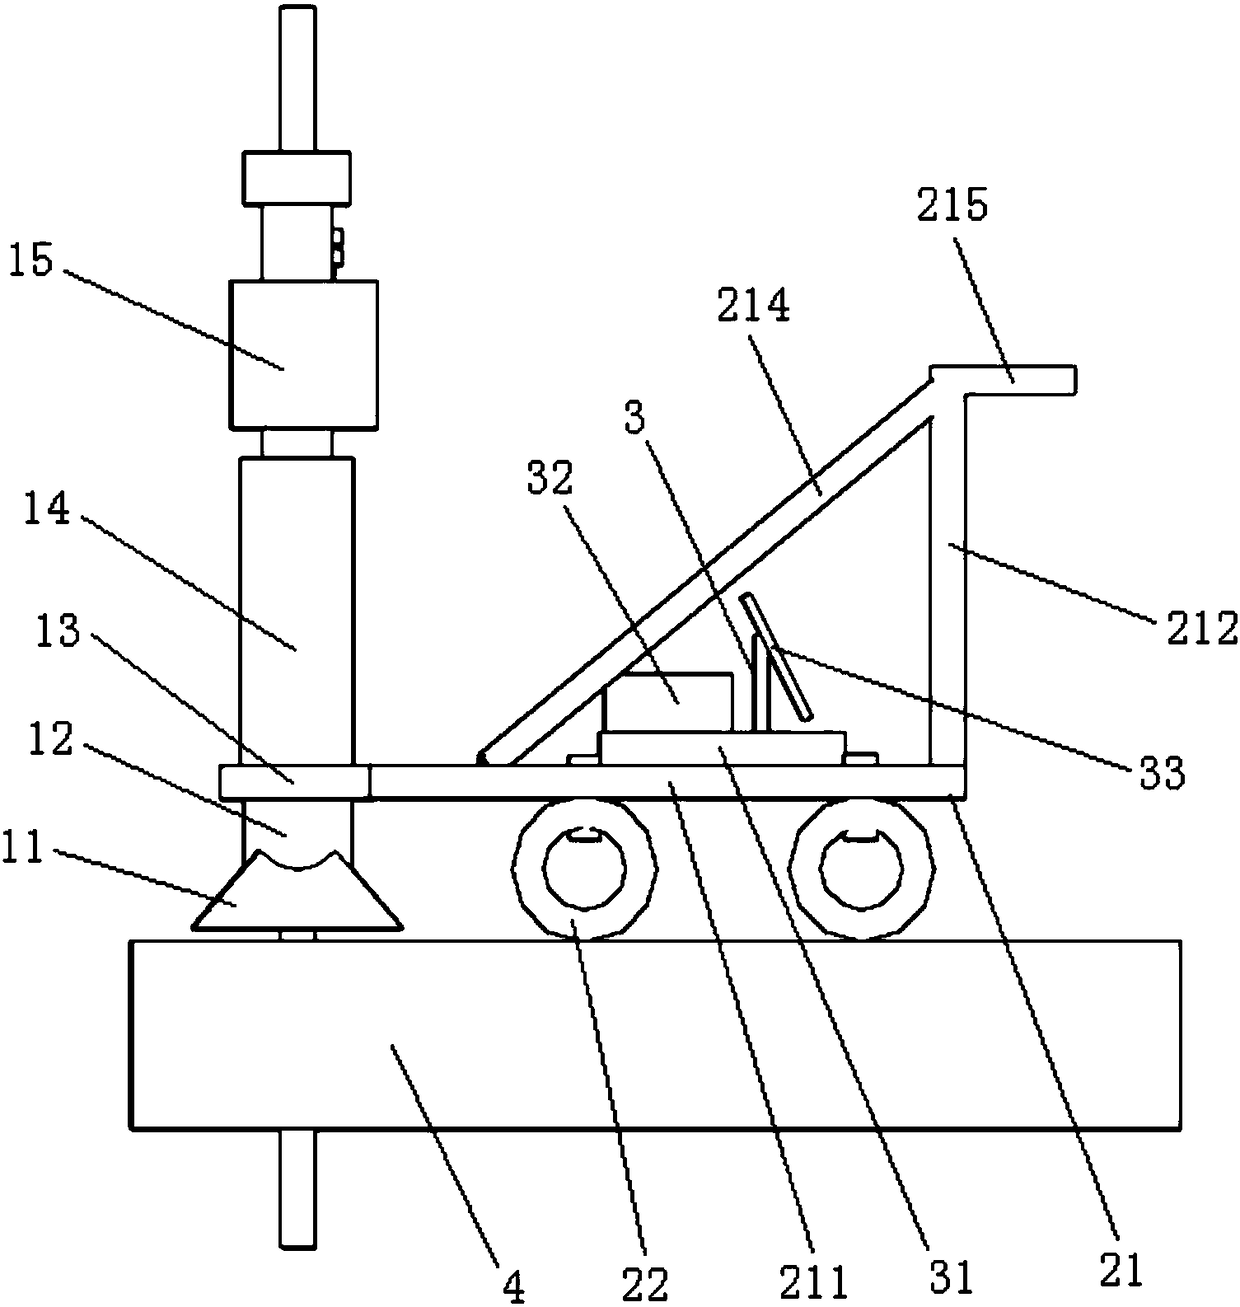 A bridge vertical reinforcement tensioning equipment